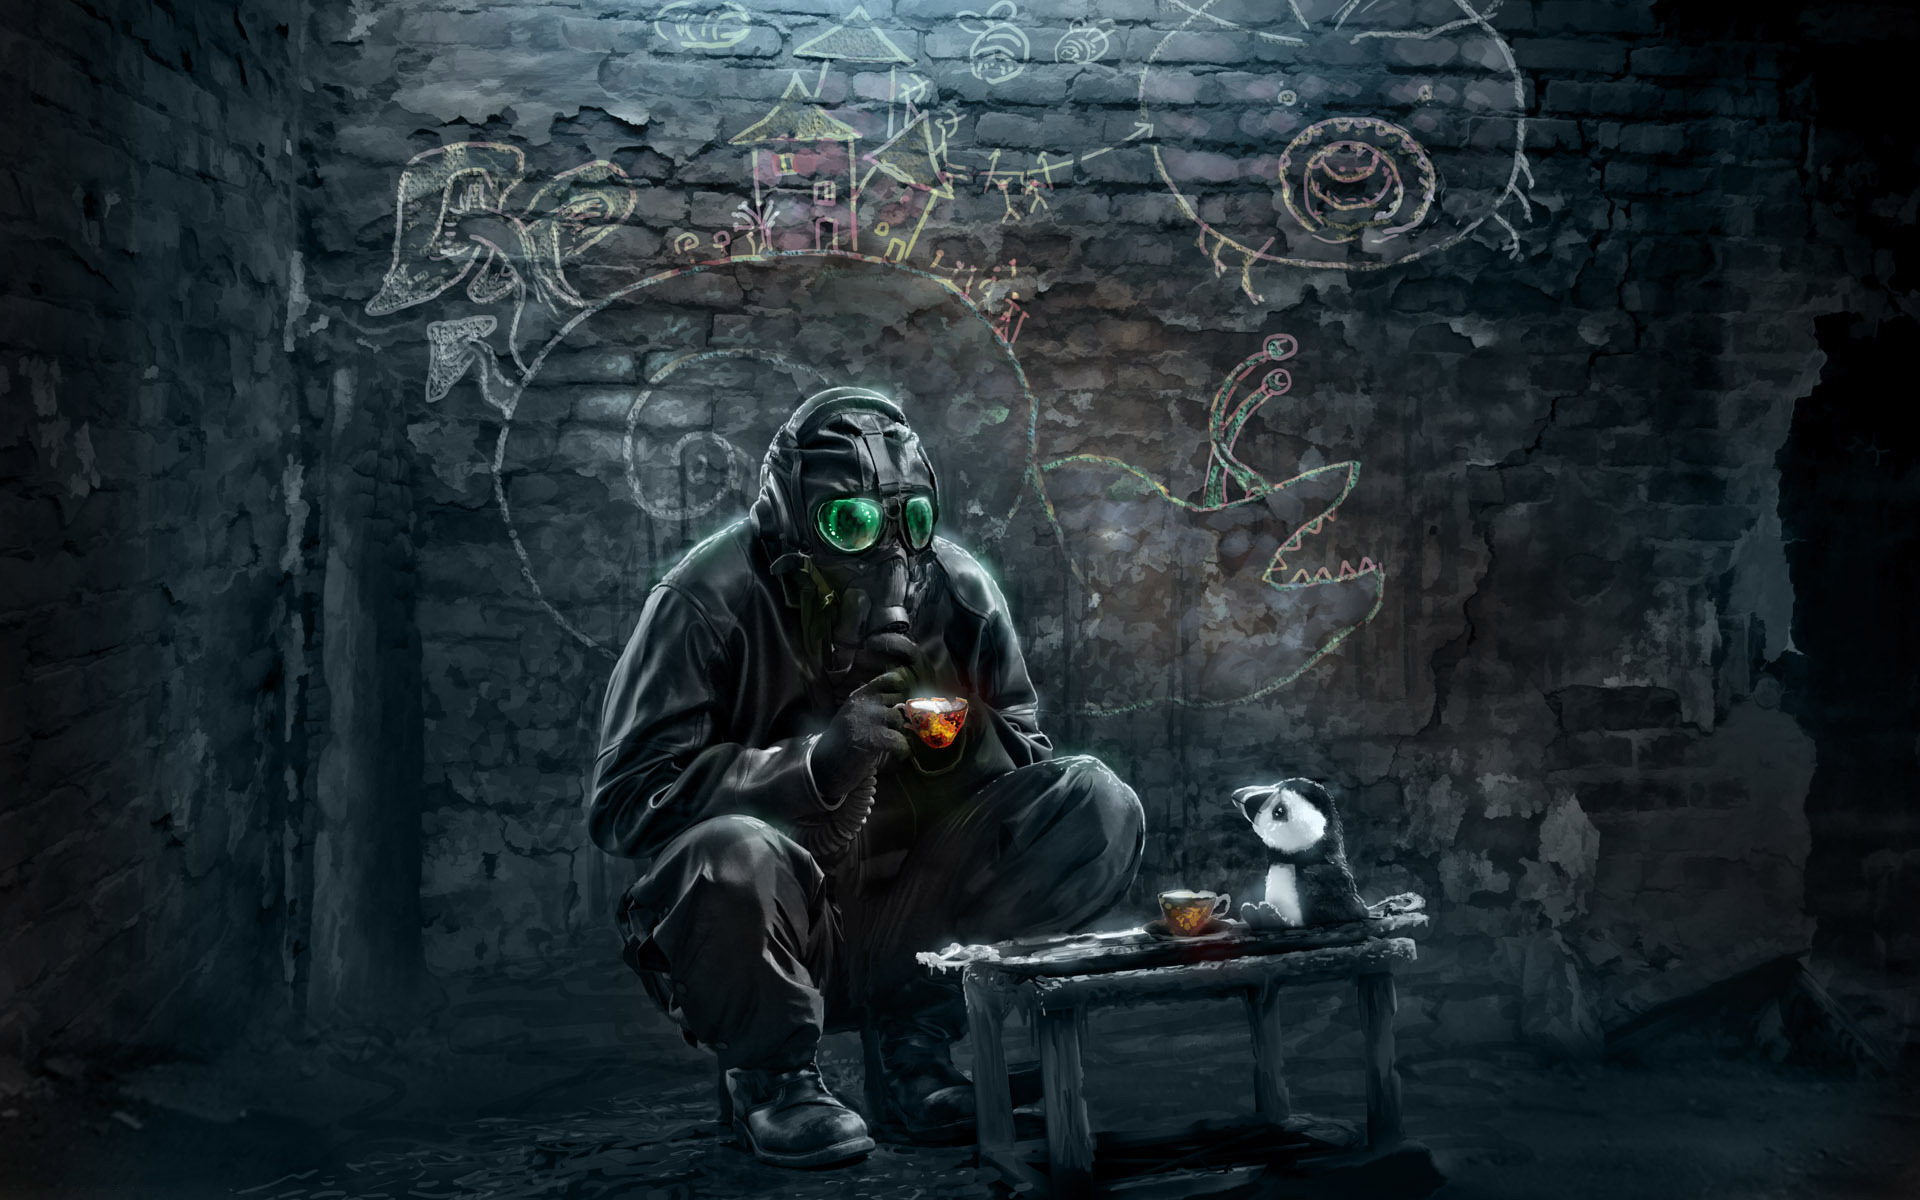 gas mask graffiti wallpaper